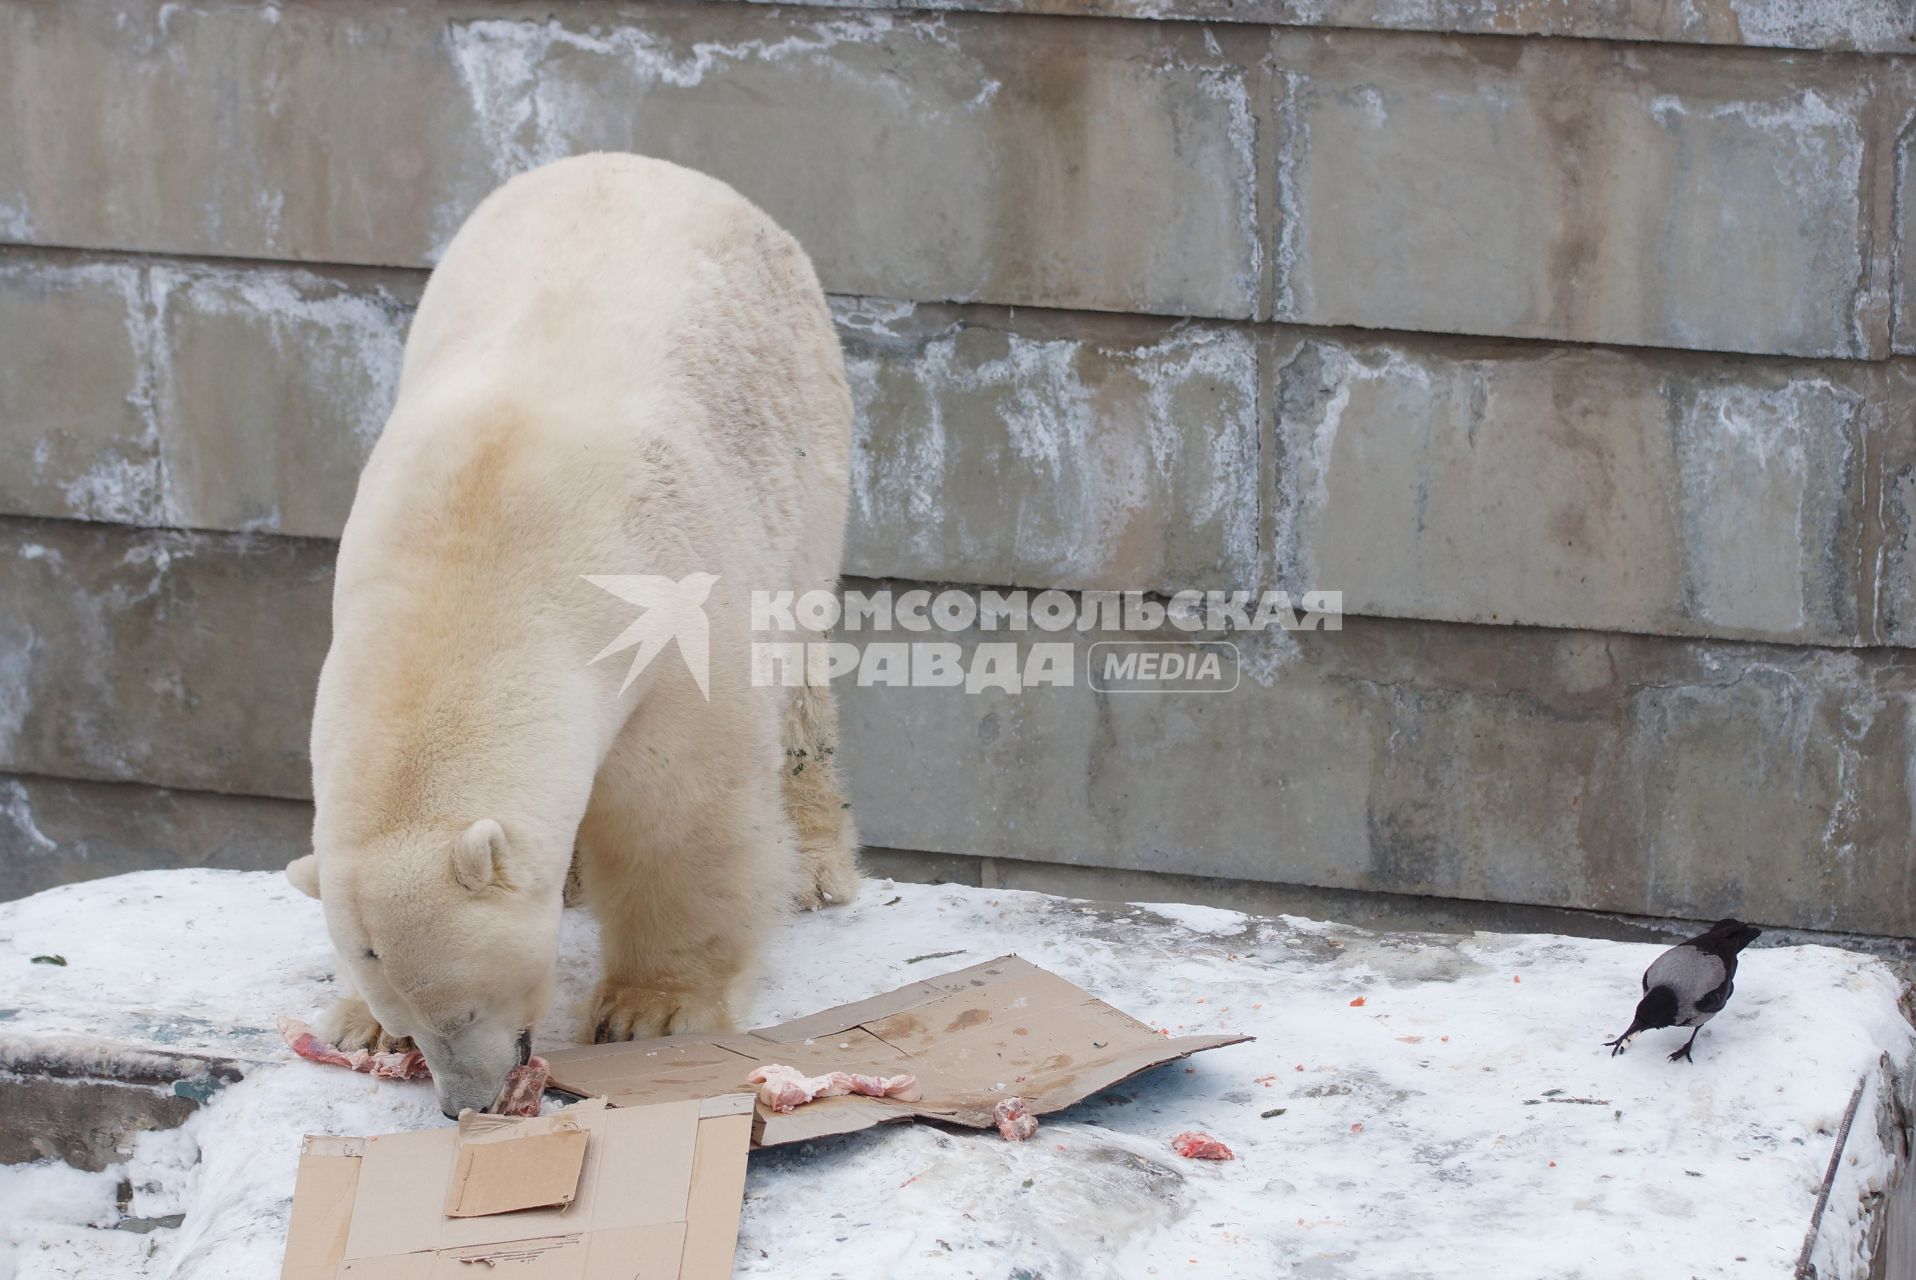 Белый медведь Умка из Екатеринбургского зоопарка в своем вольере с зачетной книжкой, подареной ему сотрудниками зоопарка, в день его рождения совпавшим с днем студента